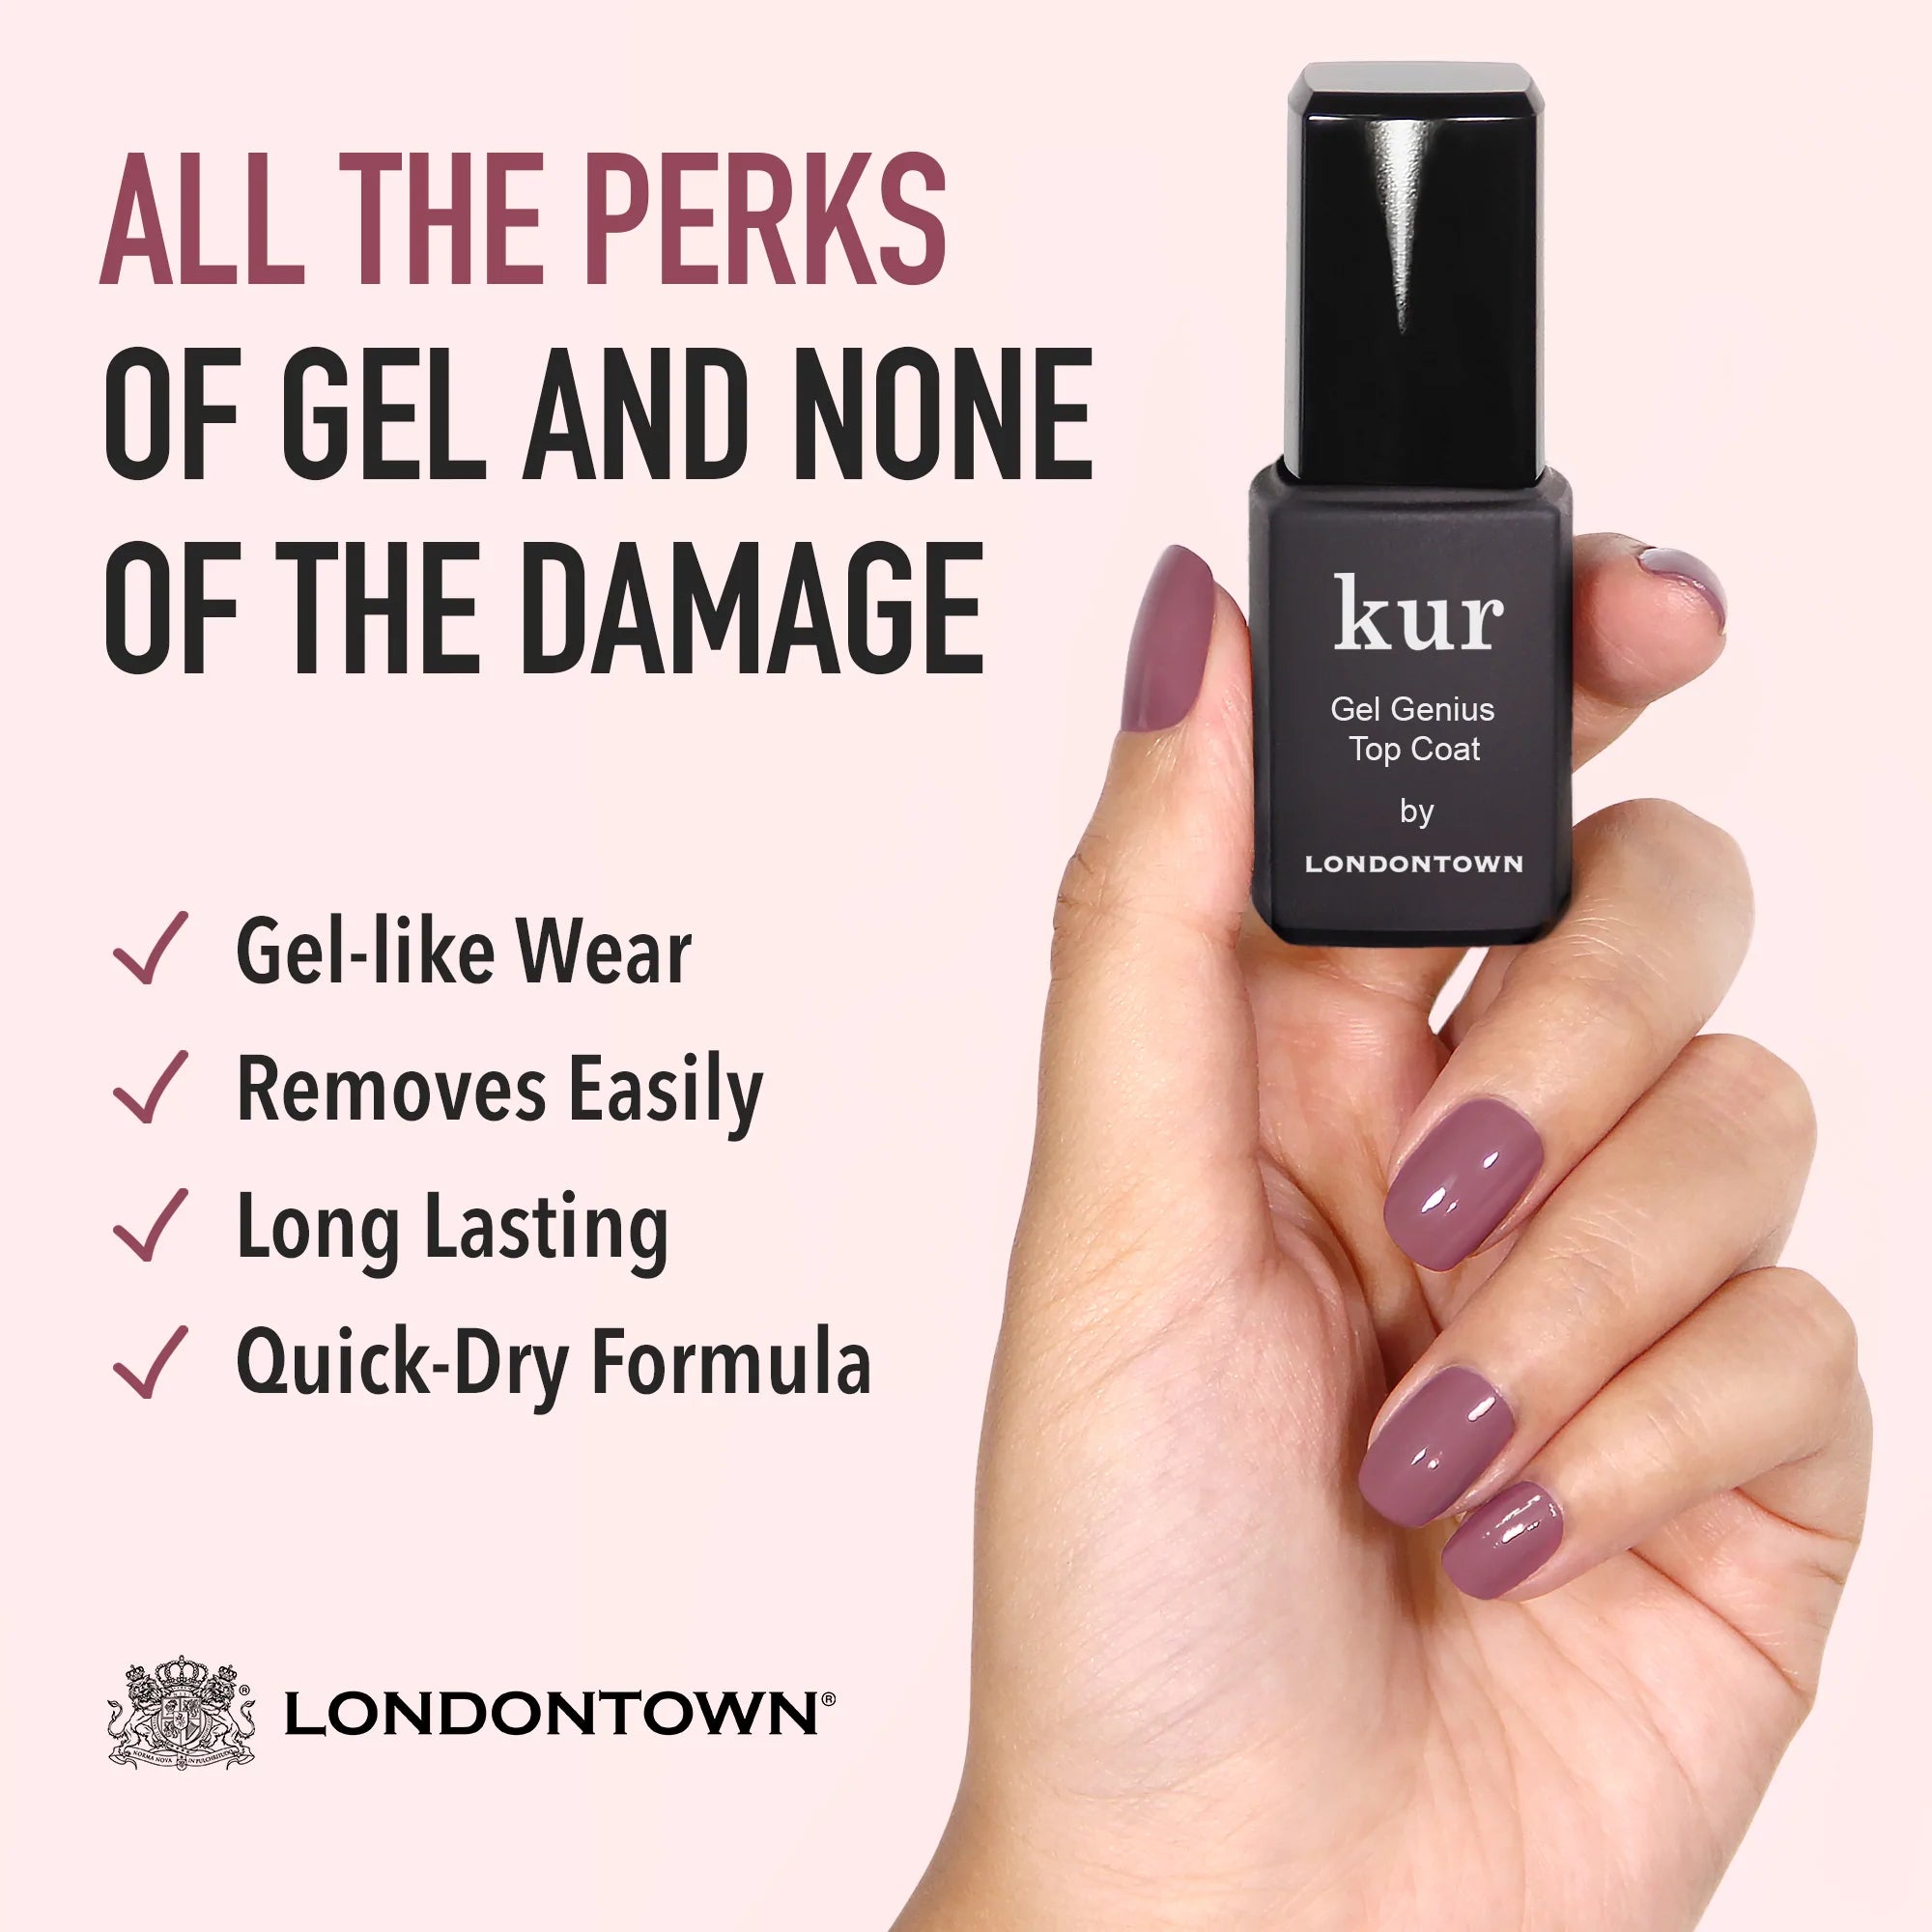  Gel Genius Top Coat by LONDONTOWN LONDONTOWN Perfumarie